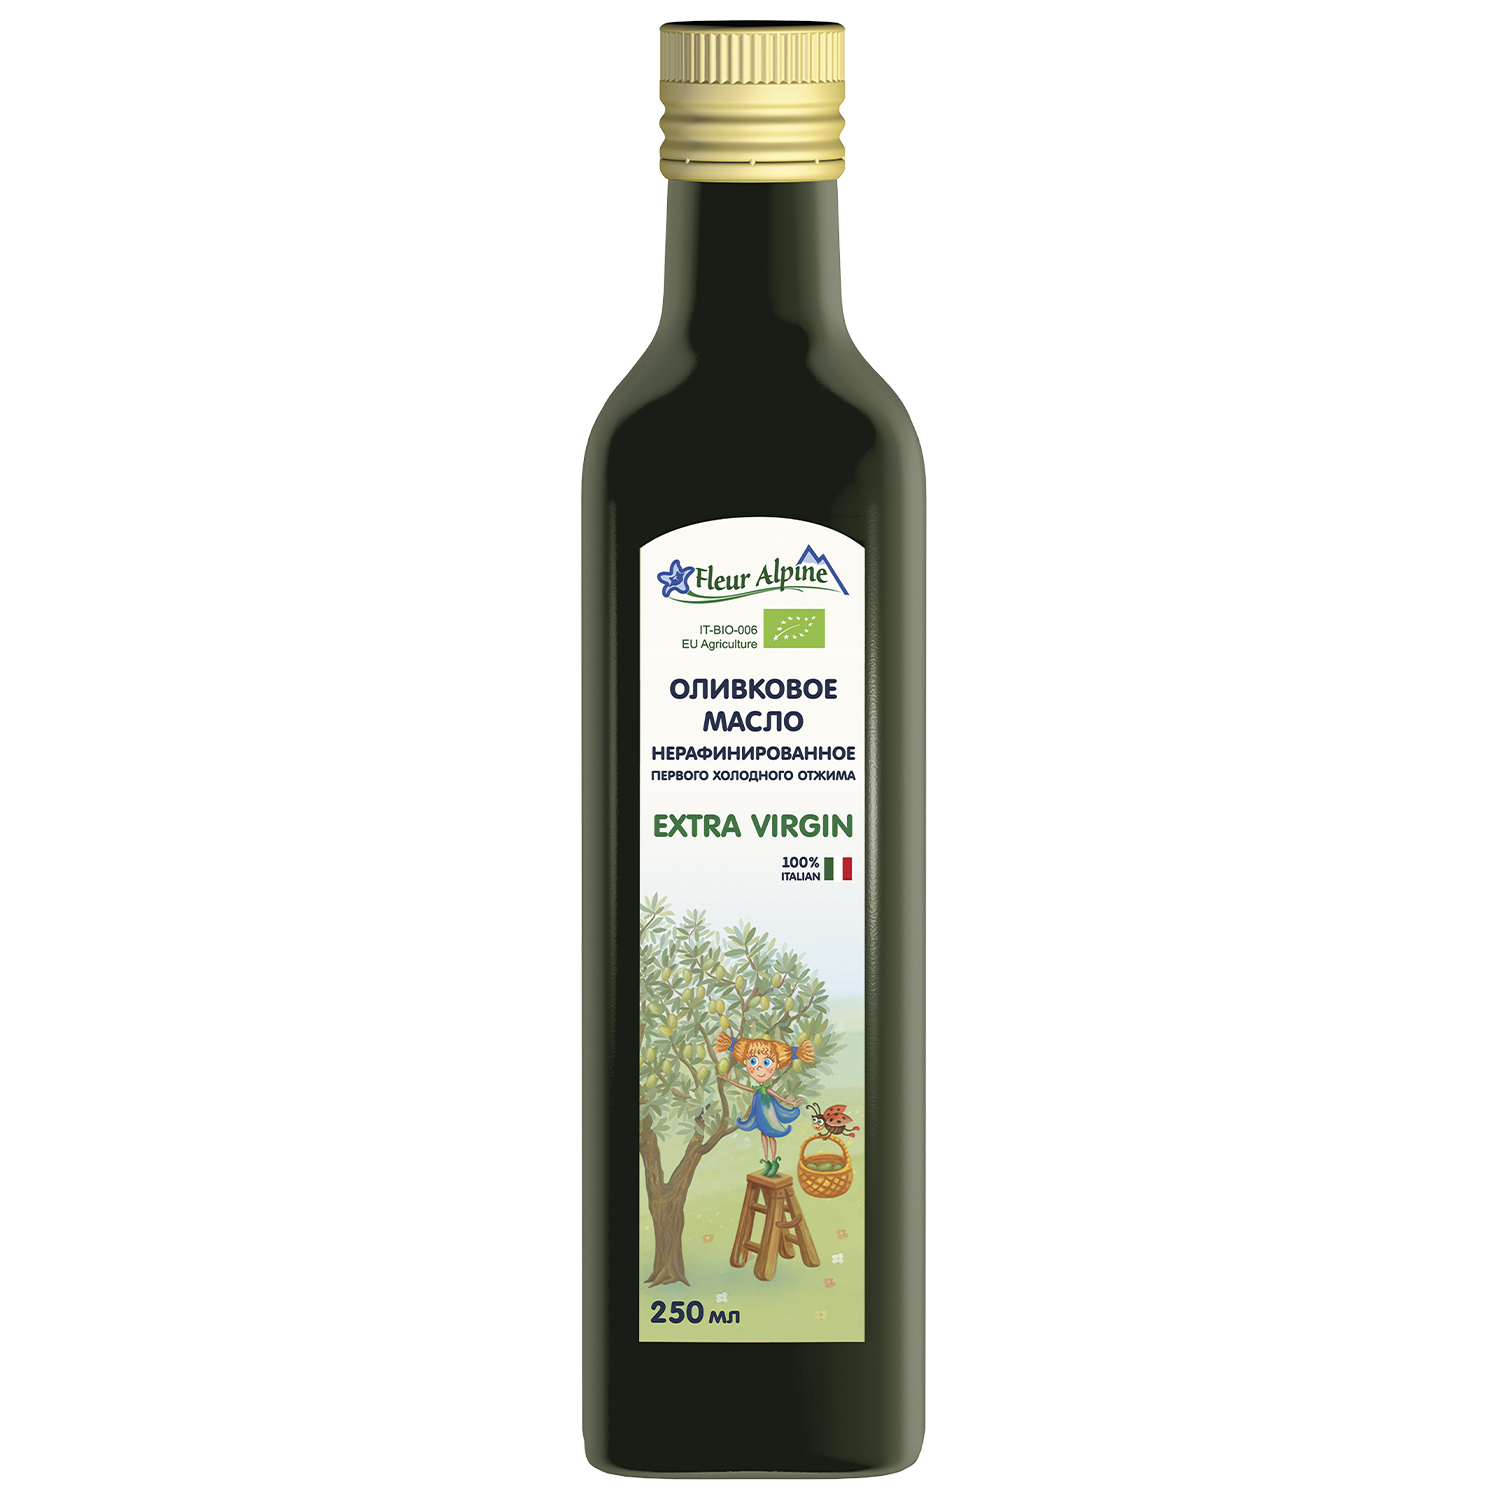 Оливковое масло детское Fleur Alpine Extra Virgin, с 6 месяцев, 250 мл оливковое масло детское fleur alpine extra virgin с 6 месяцев 30 сашетов по 10 мл